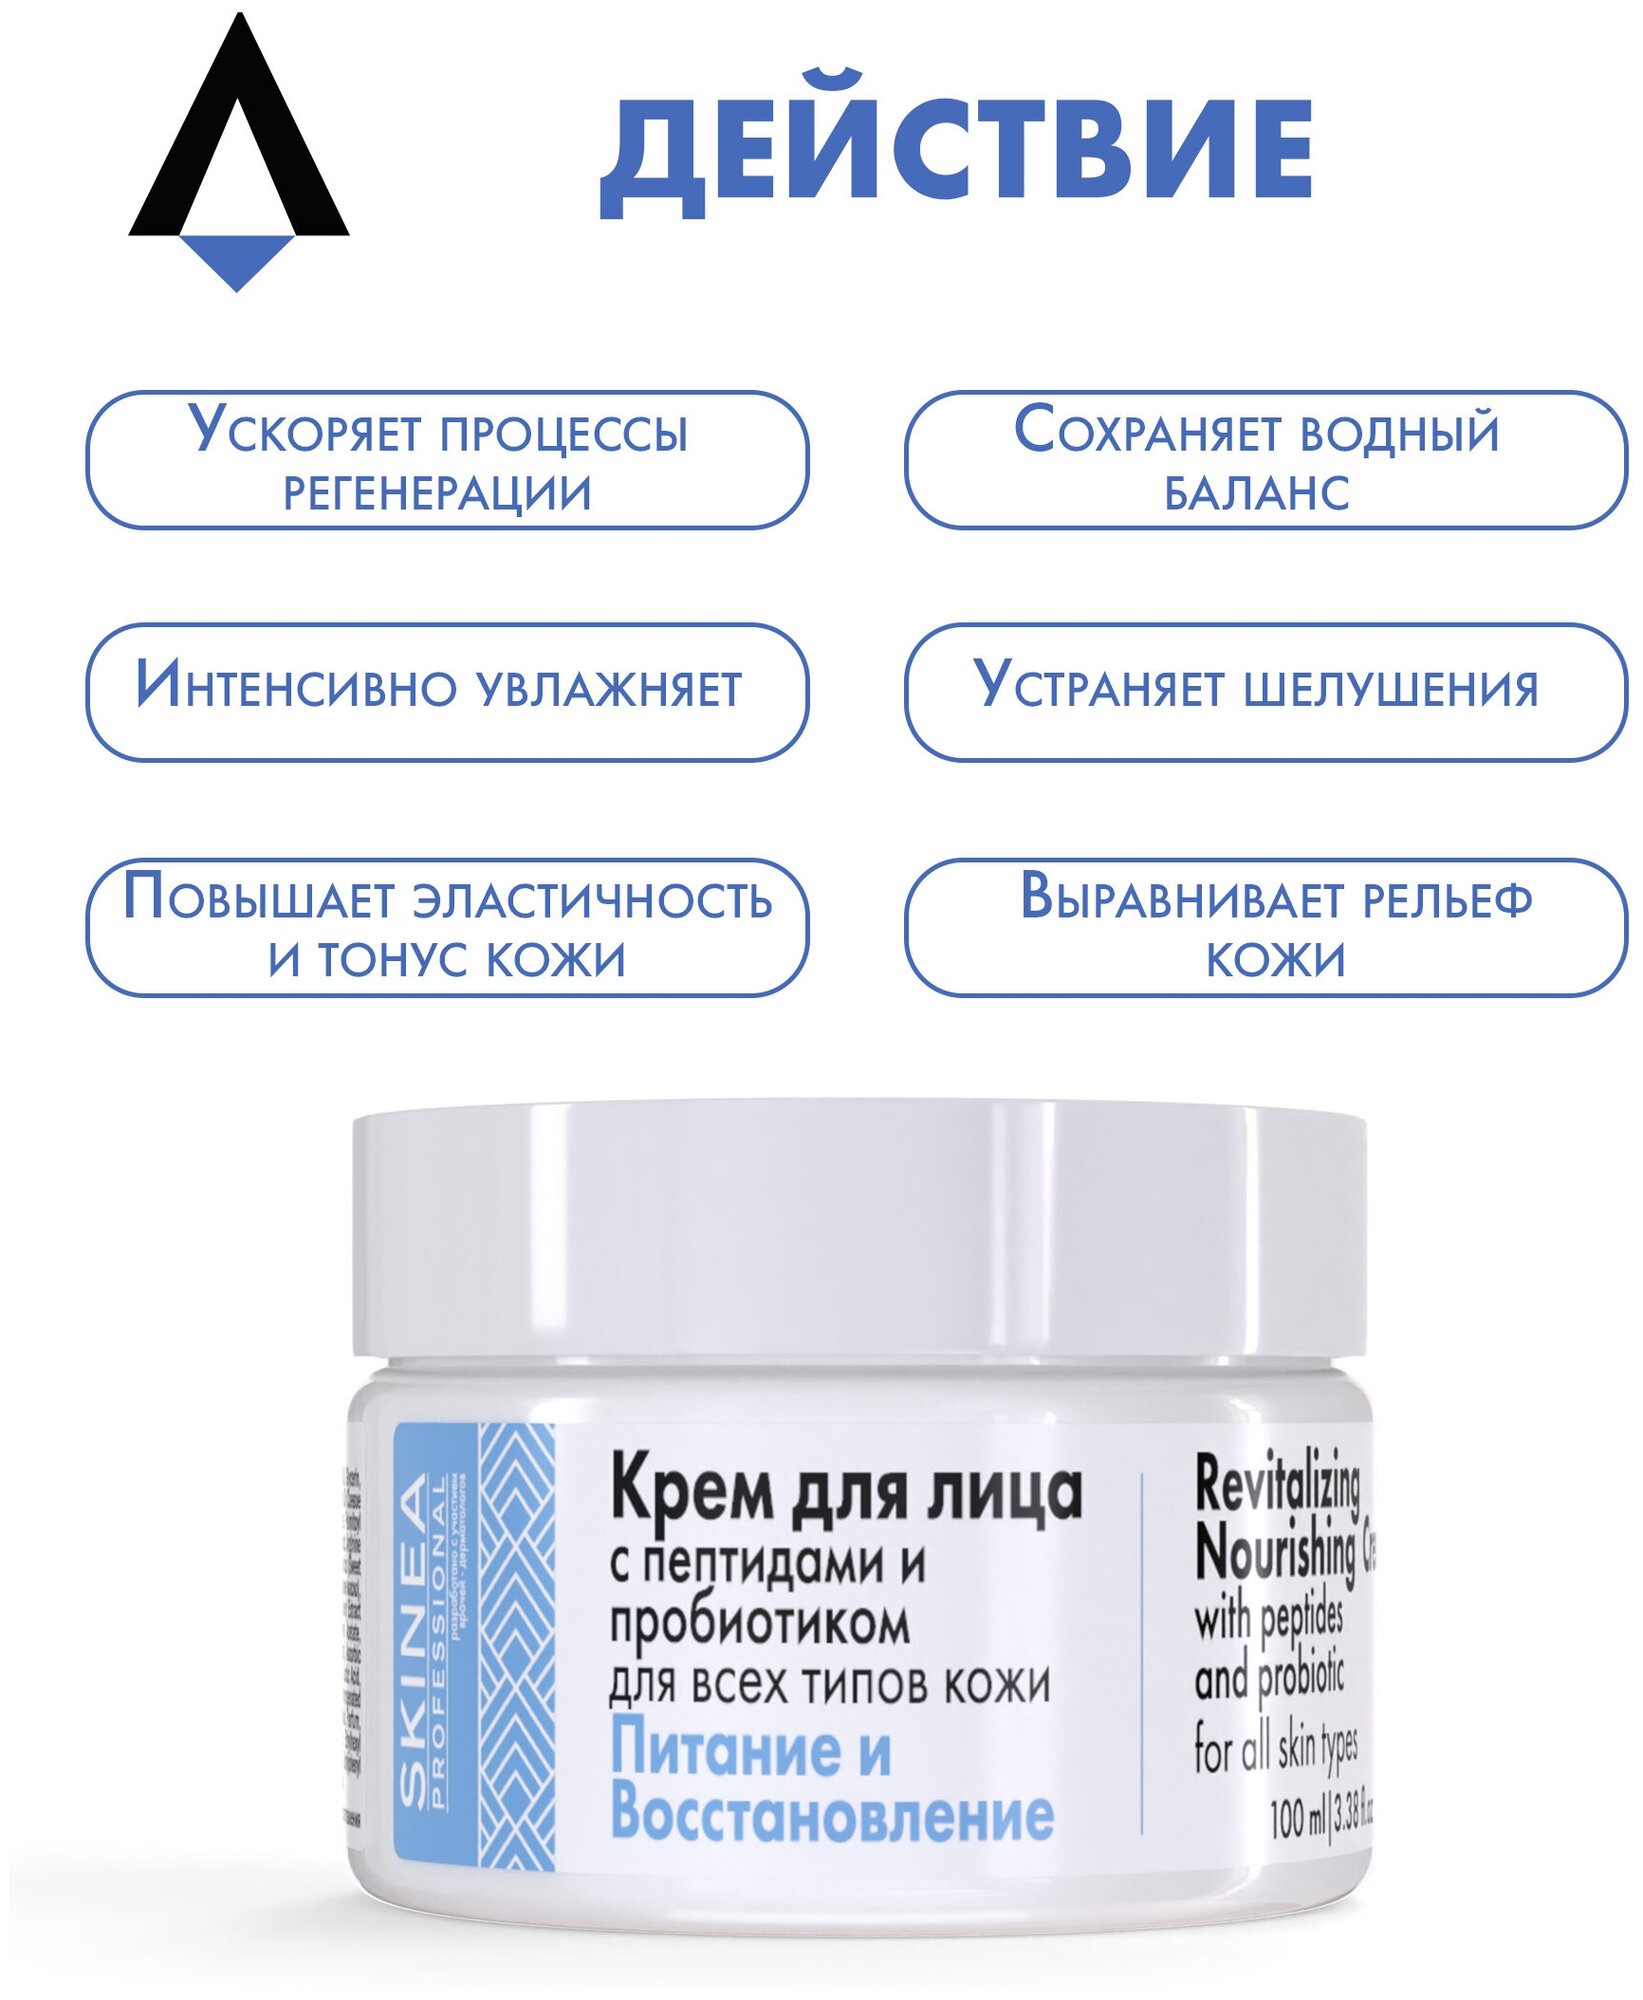 Крем для лица SKINEA с пептидами и пробиотиками для всех типов кожи